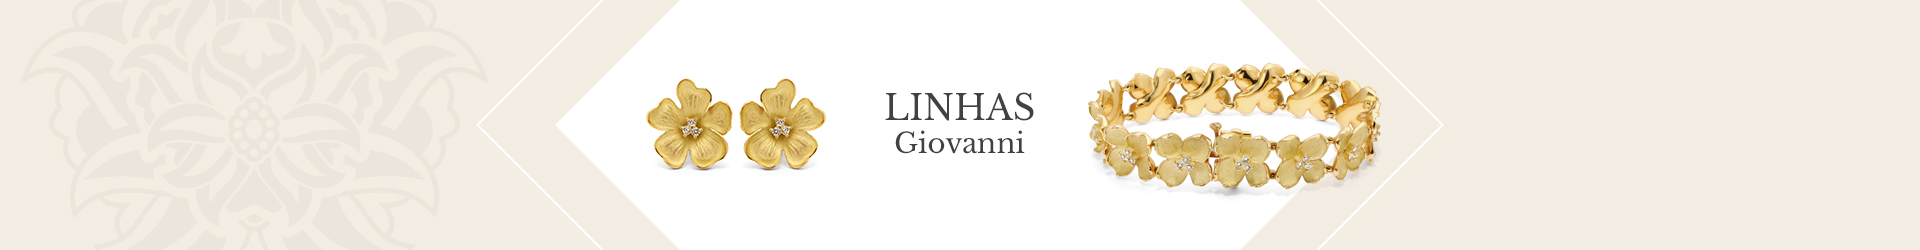 Linhas Giovanni